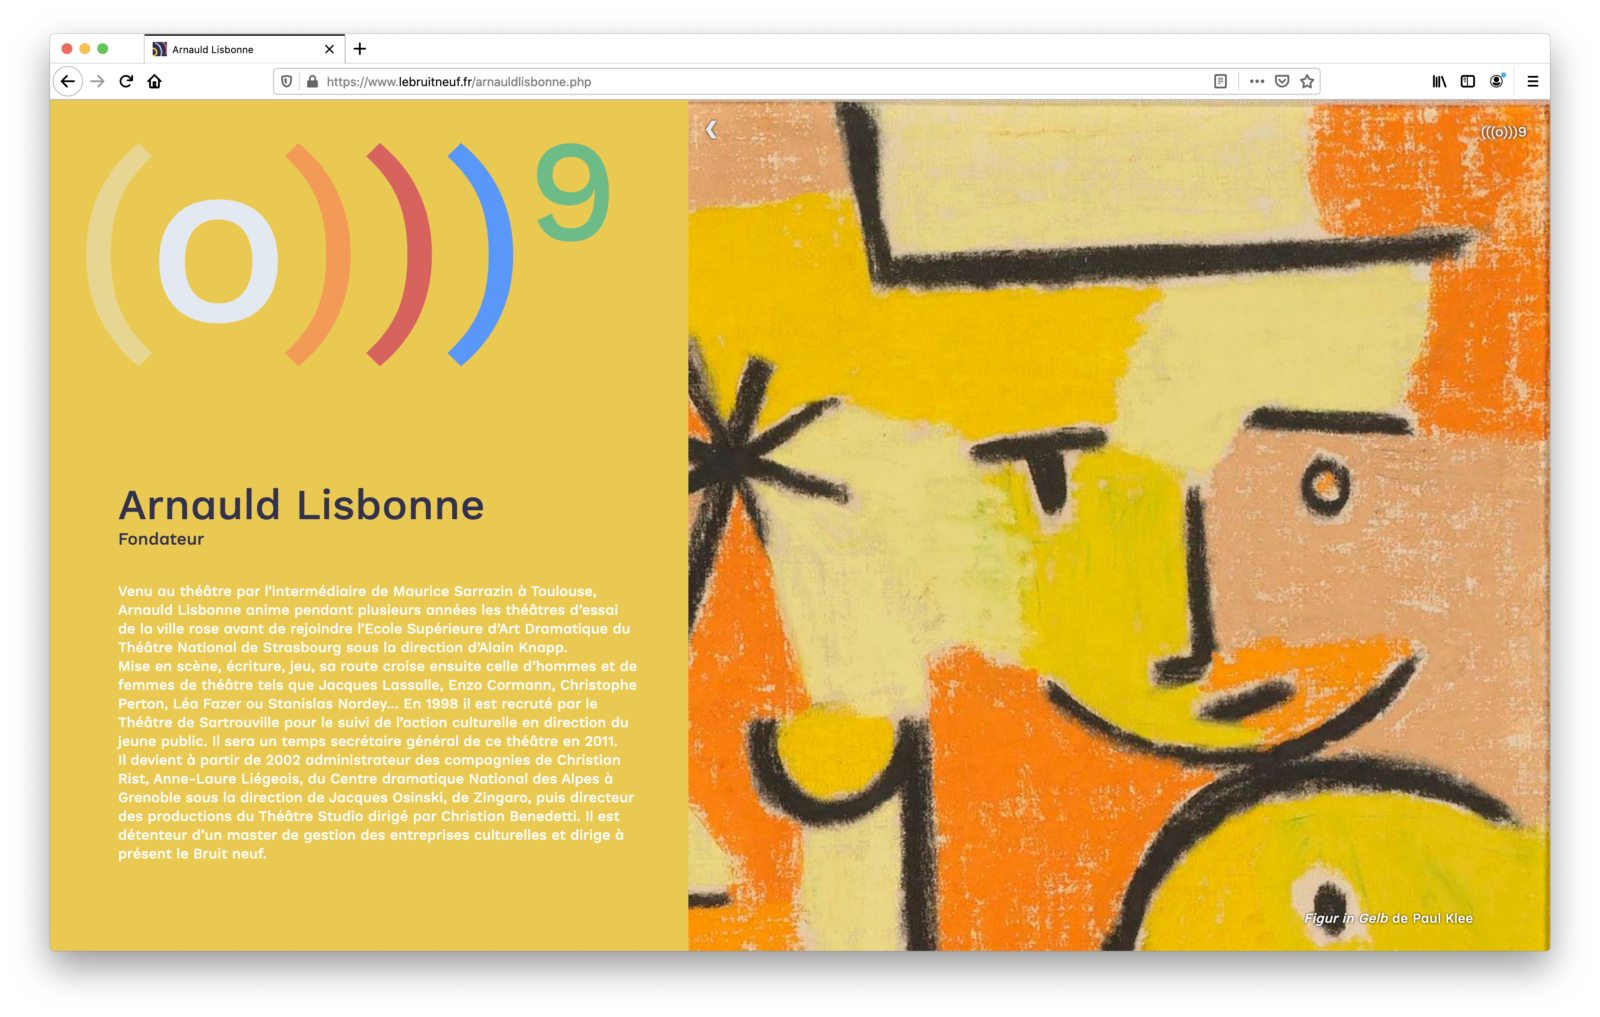 Page web du site internet bruitneuf.fr présentant le fondateur Arnaud Lisbonne. La présentation est sur fond jaune, et sur la droite une illustration au pastel gras.